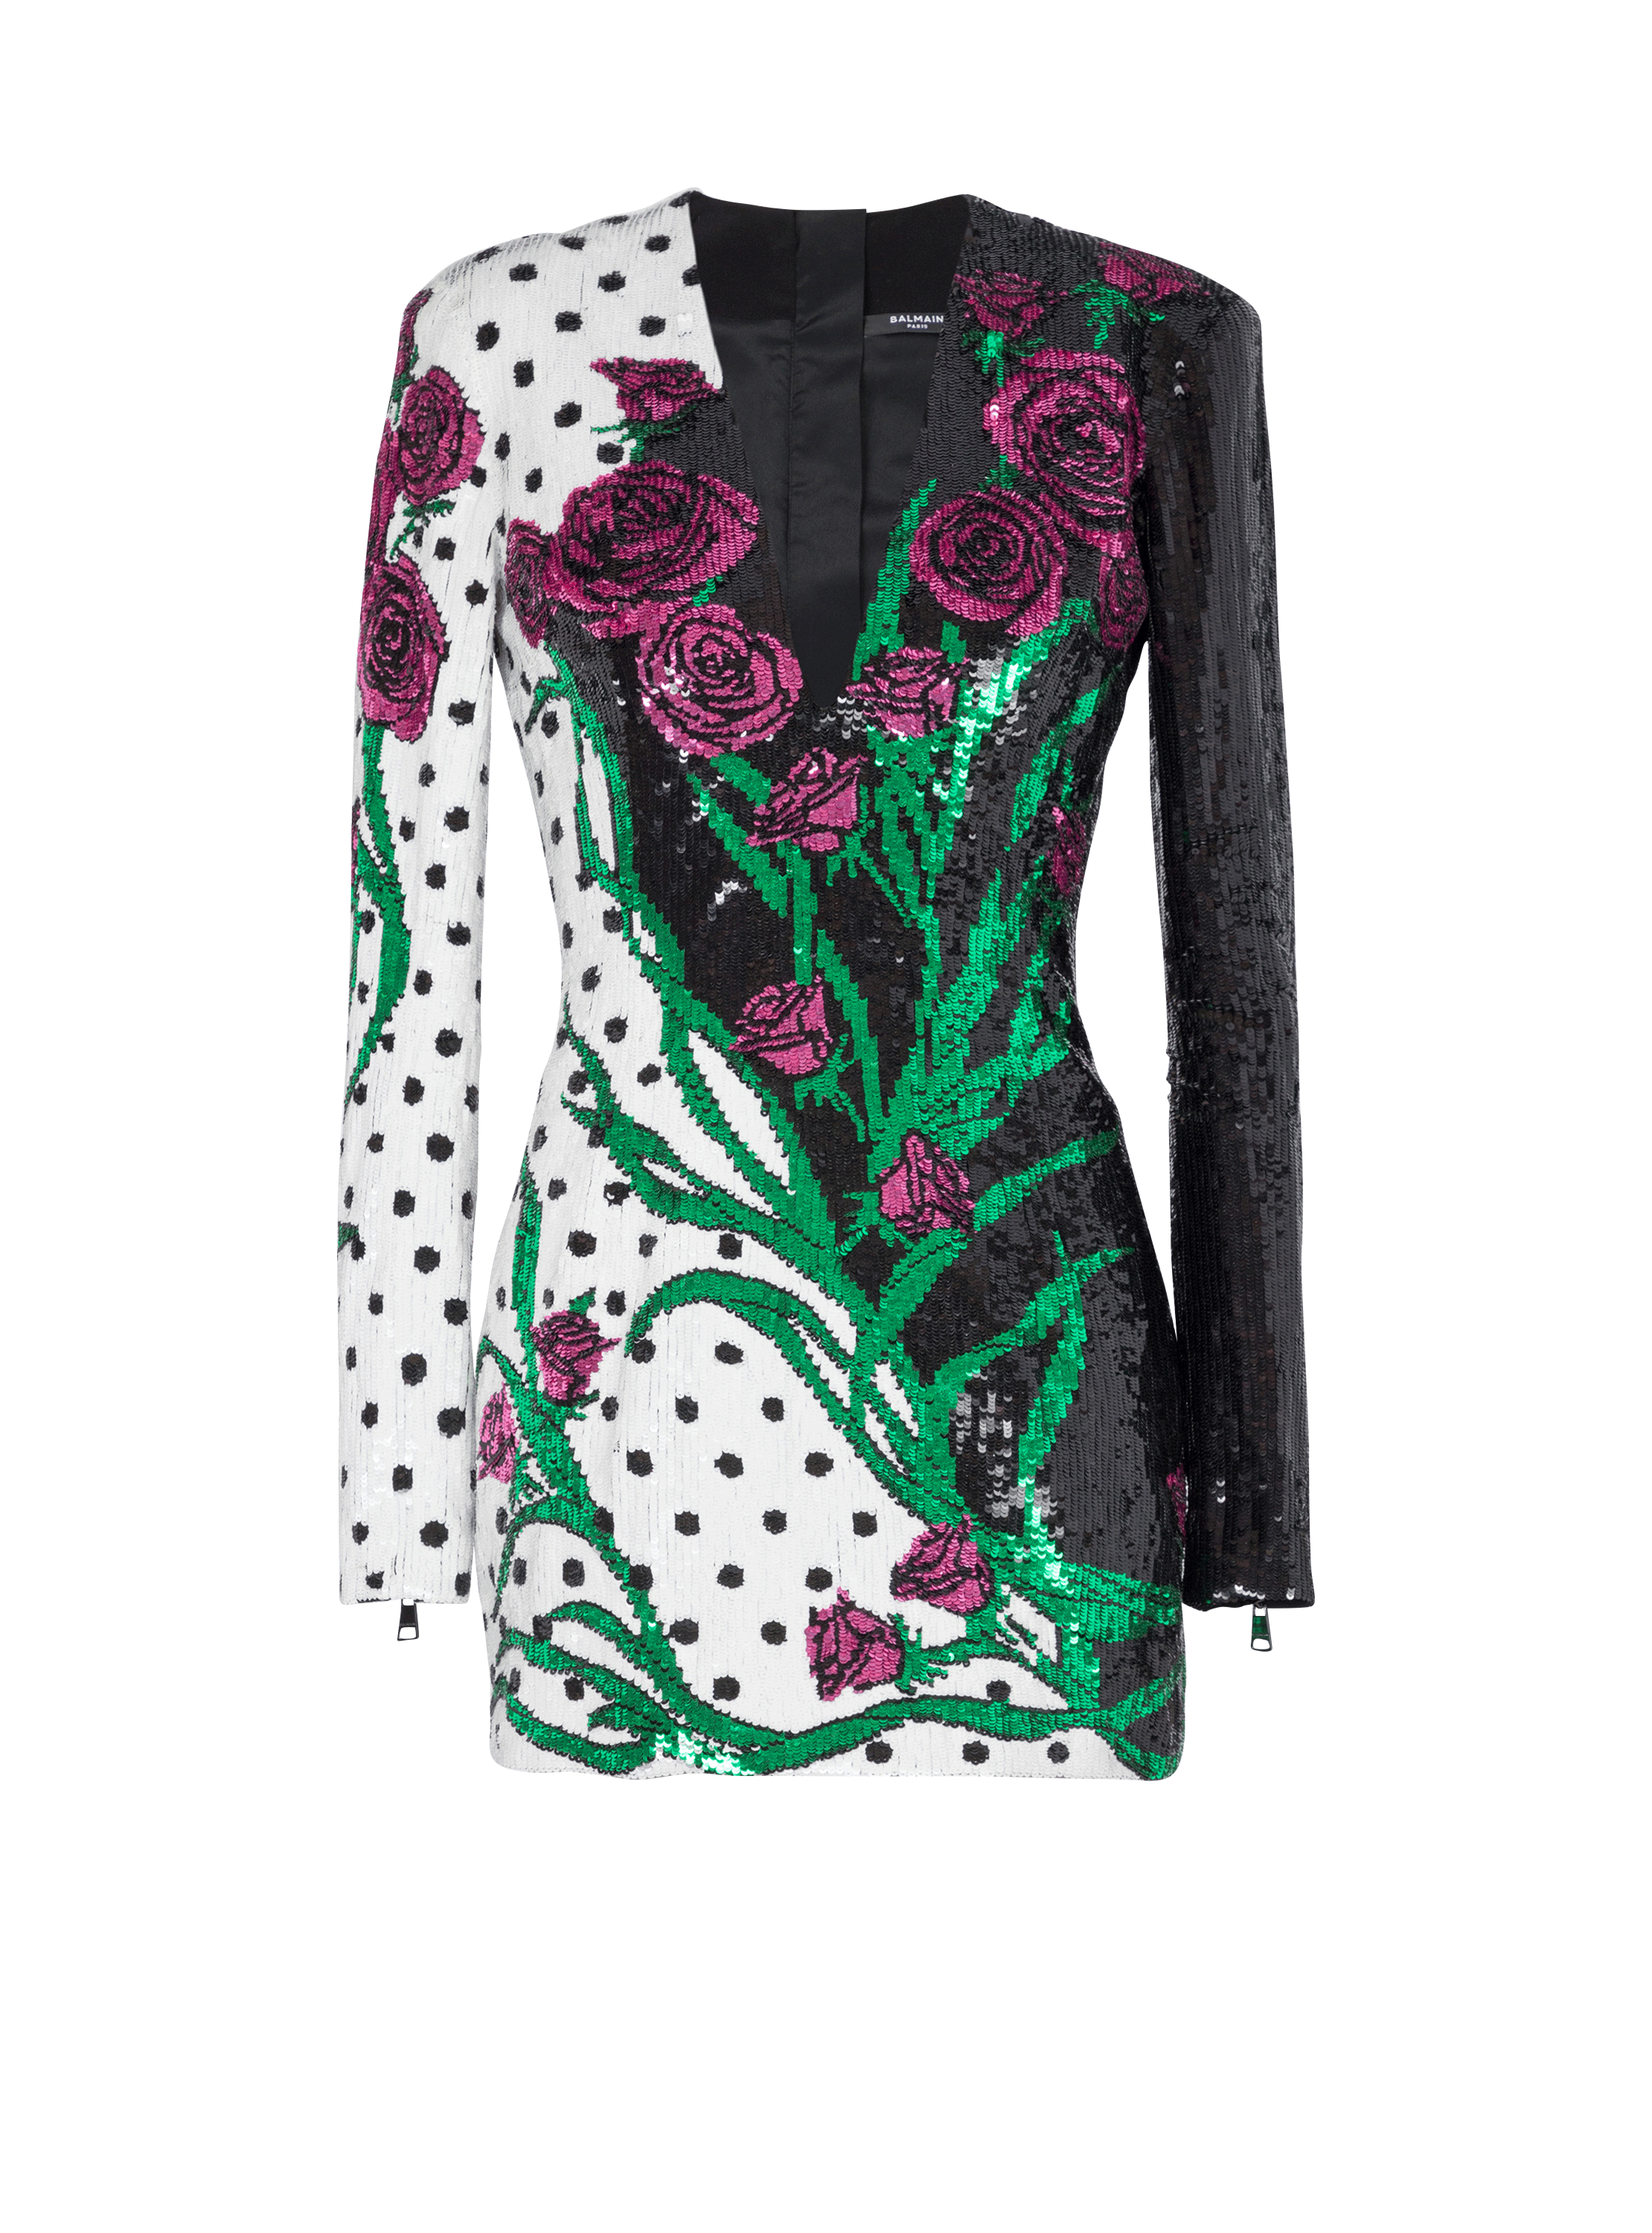 Kurzes Kleid mit Rosen- und Polka Dots-Print, multicolor, hi-res